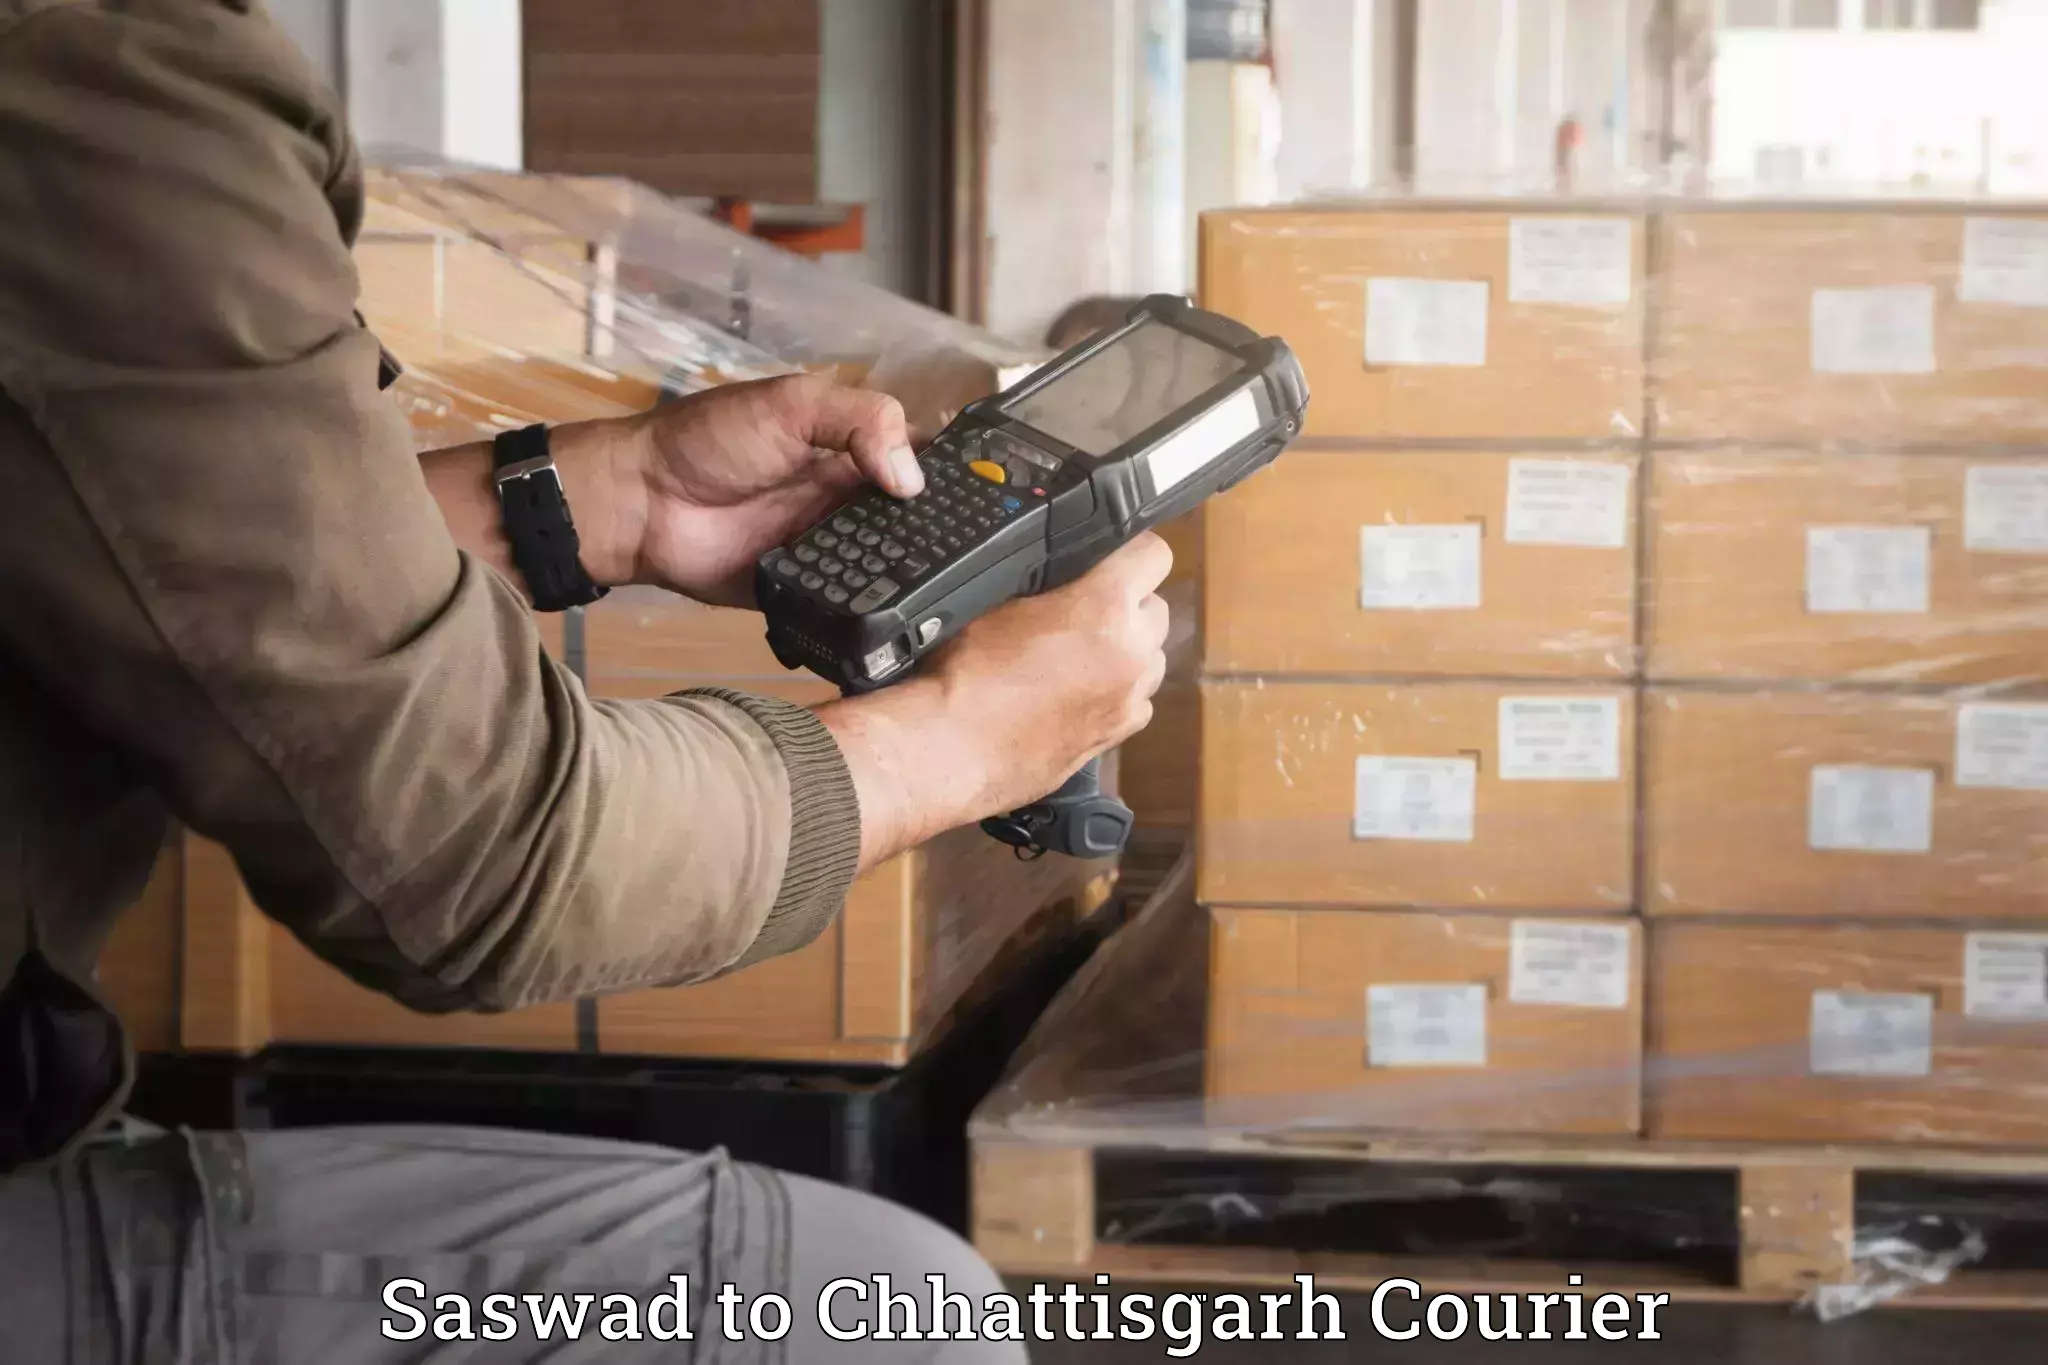 Artwork baggage courier Saswad to Korea Chhattisgarh